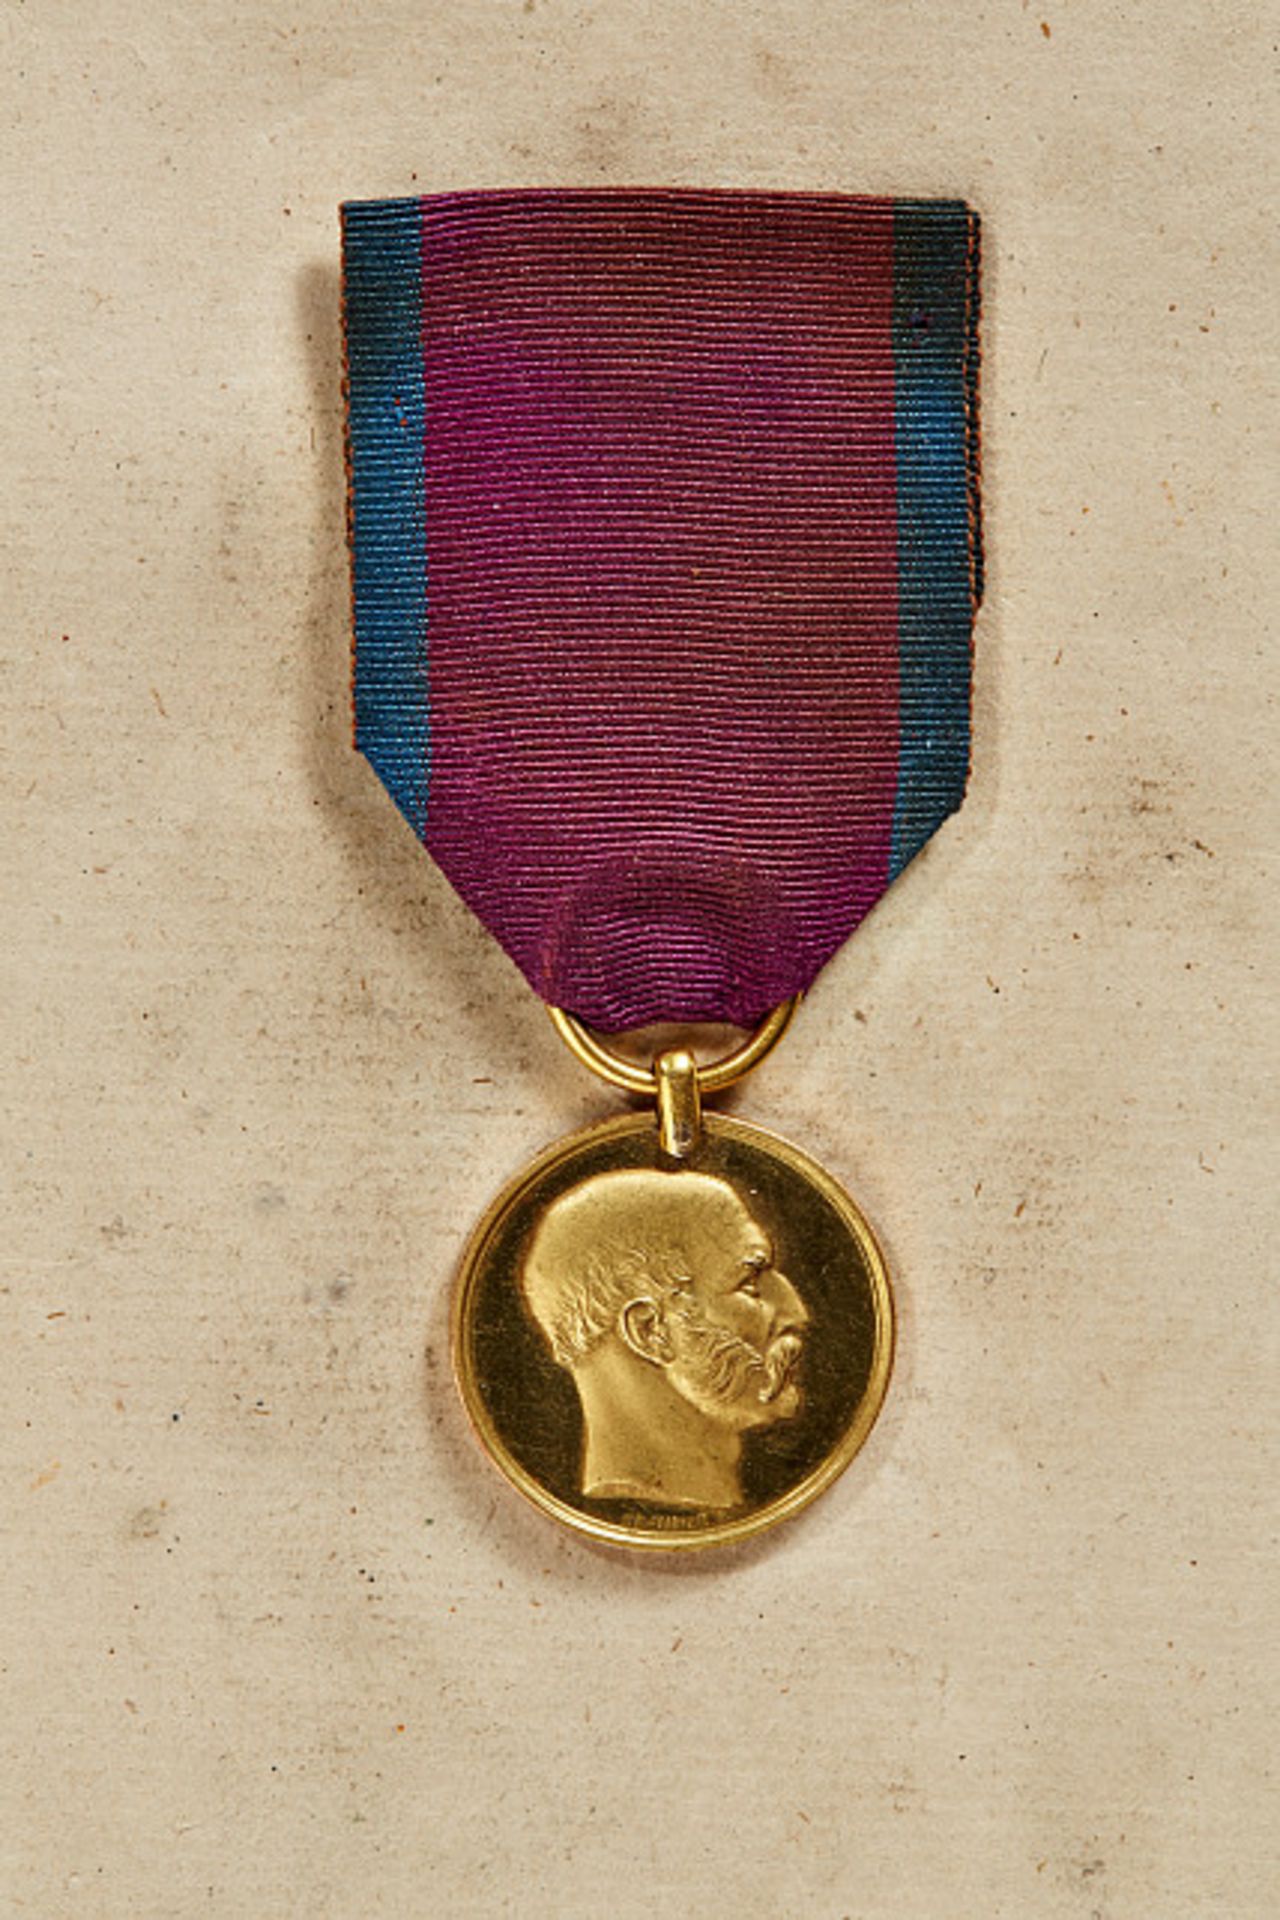 KÖNIGREICH HANNOVER - ERNST-AUGUST-ORDEN : Goldene Wilhelms-Medaille für 25 Dienstjahre mit dem